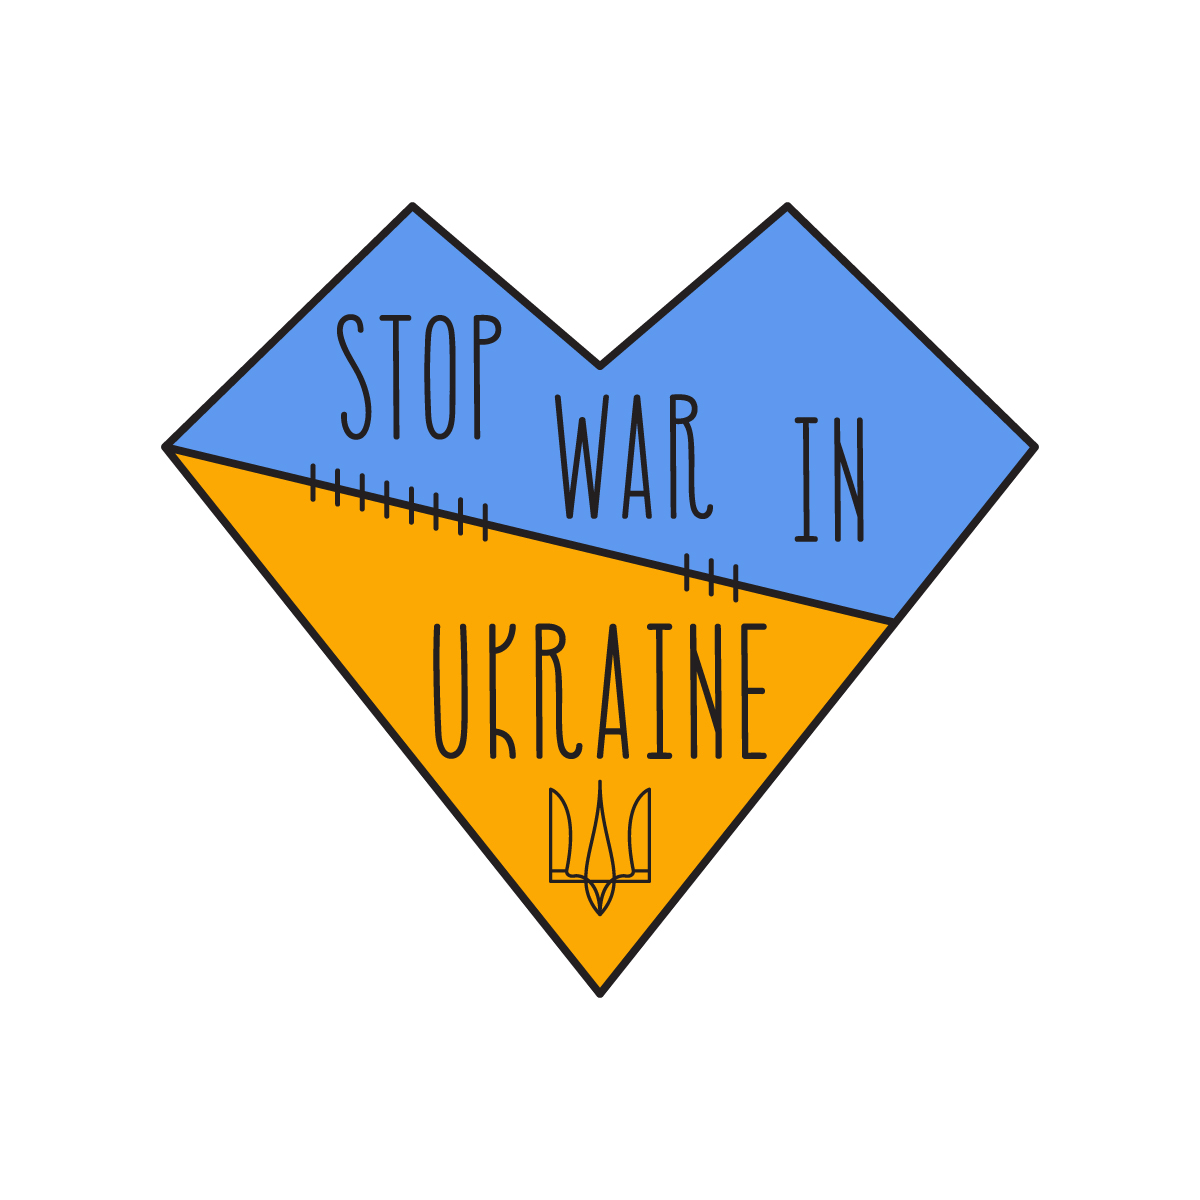 Stop War in Ukraine